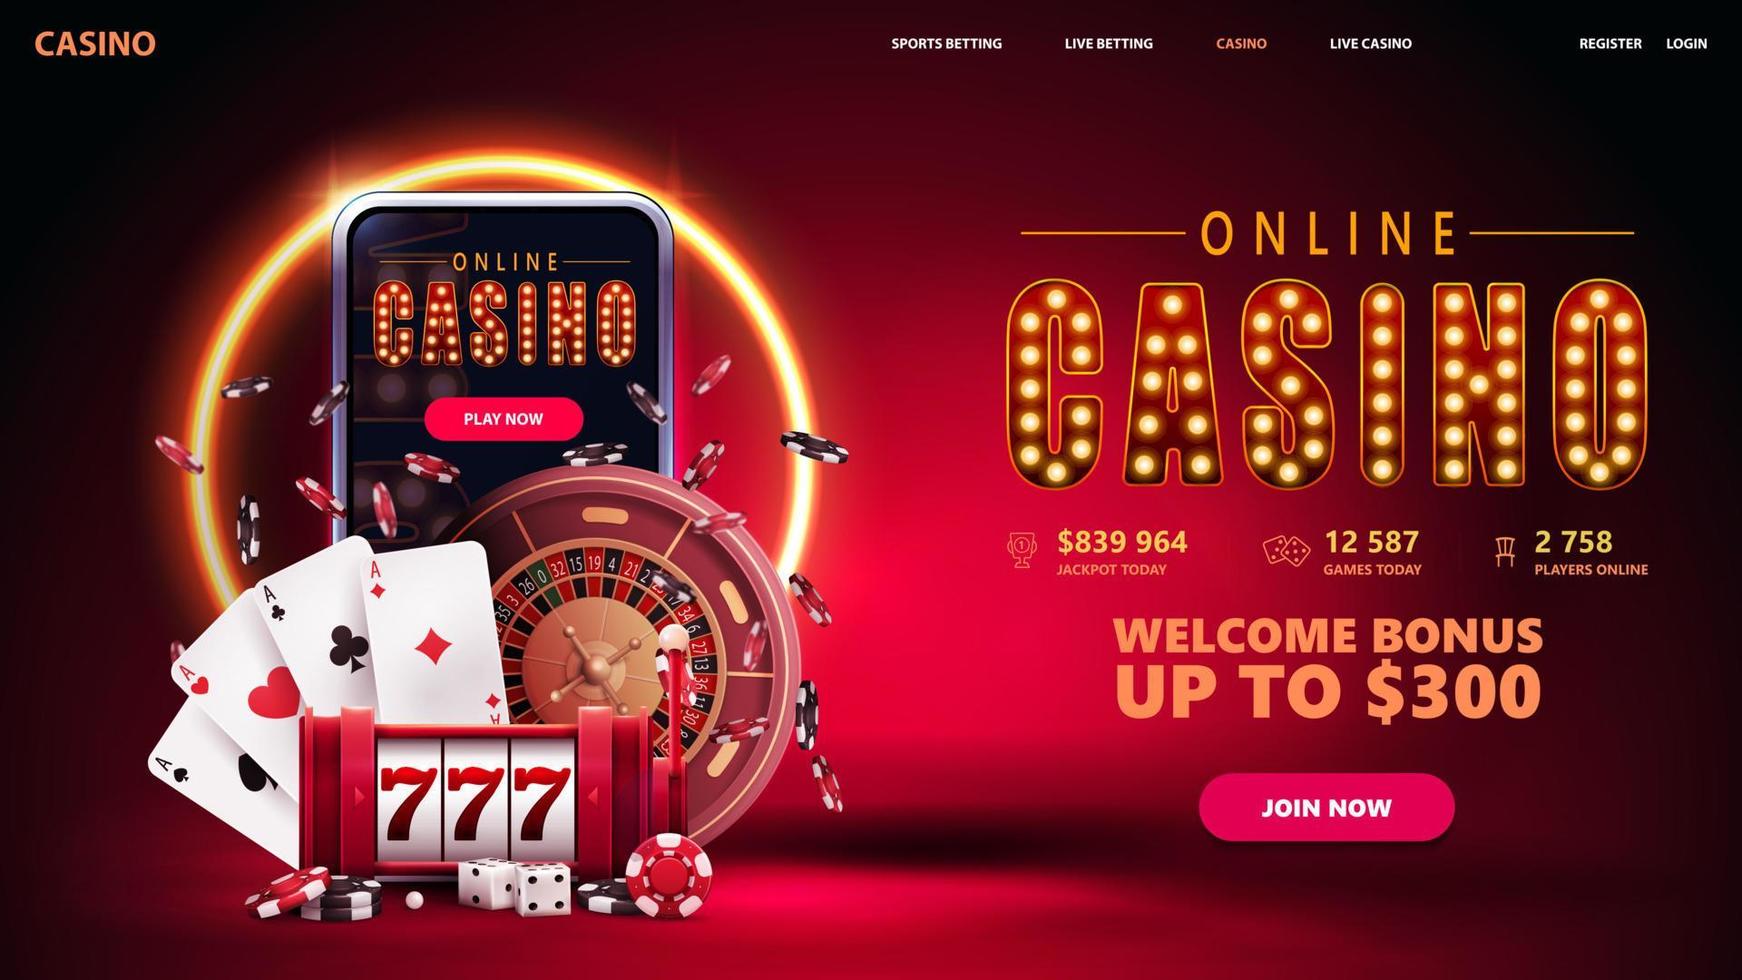 Online-Casino, rotes Einladungsbanner für Website mit Knopf, Smartphone, Spielautomat, Casino-Roulette, Pokerchips und Spielkarten in roter Szene mit orangefarbenem Neonring im Hintergrund. vektor